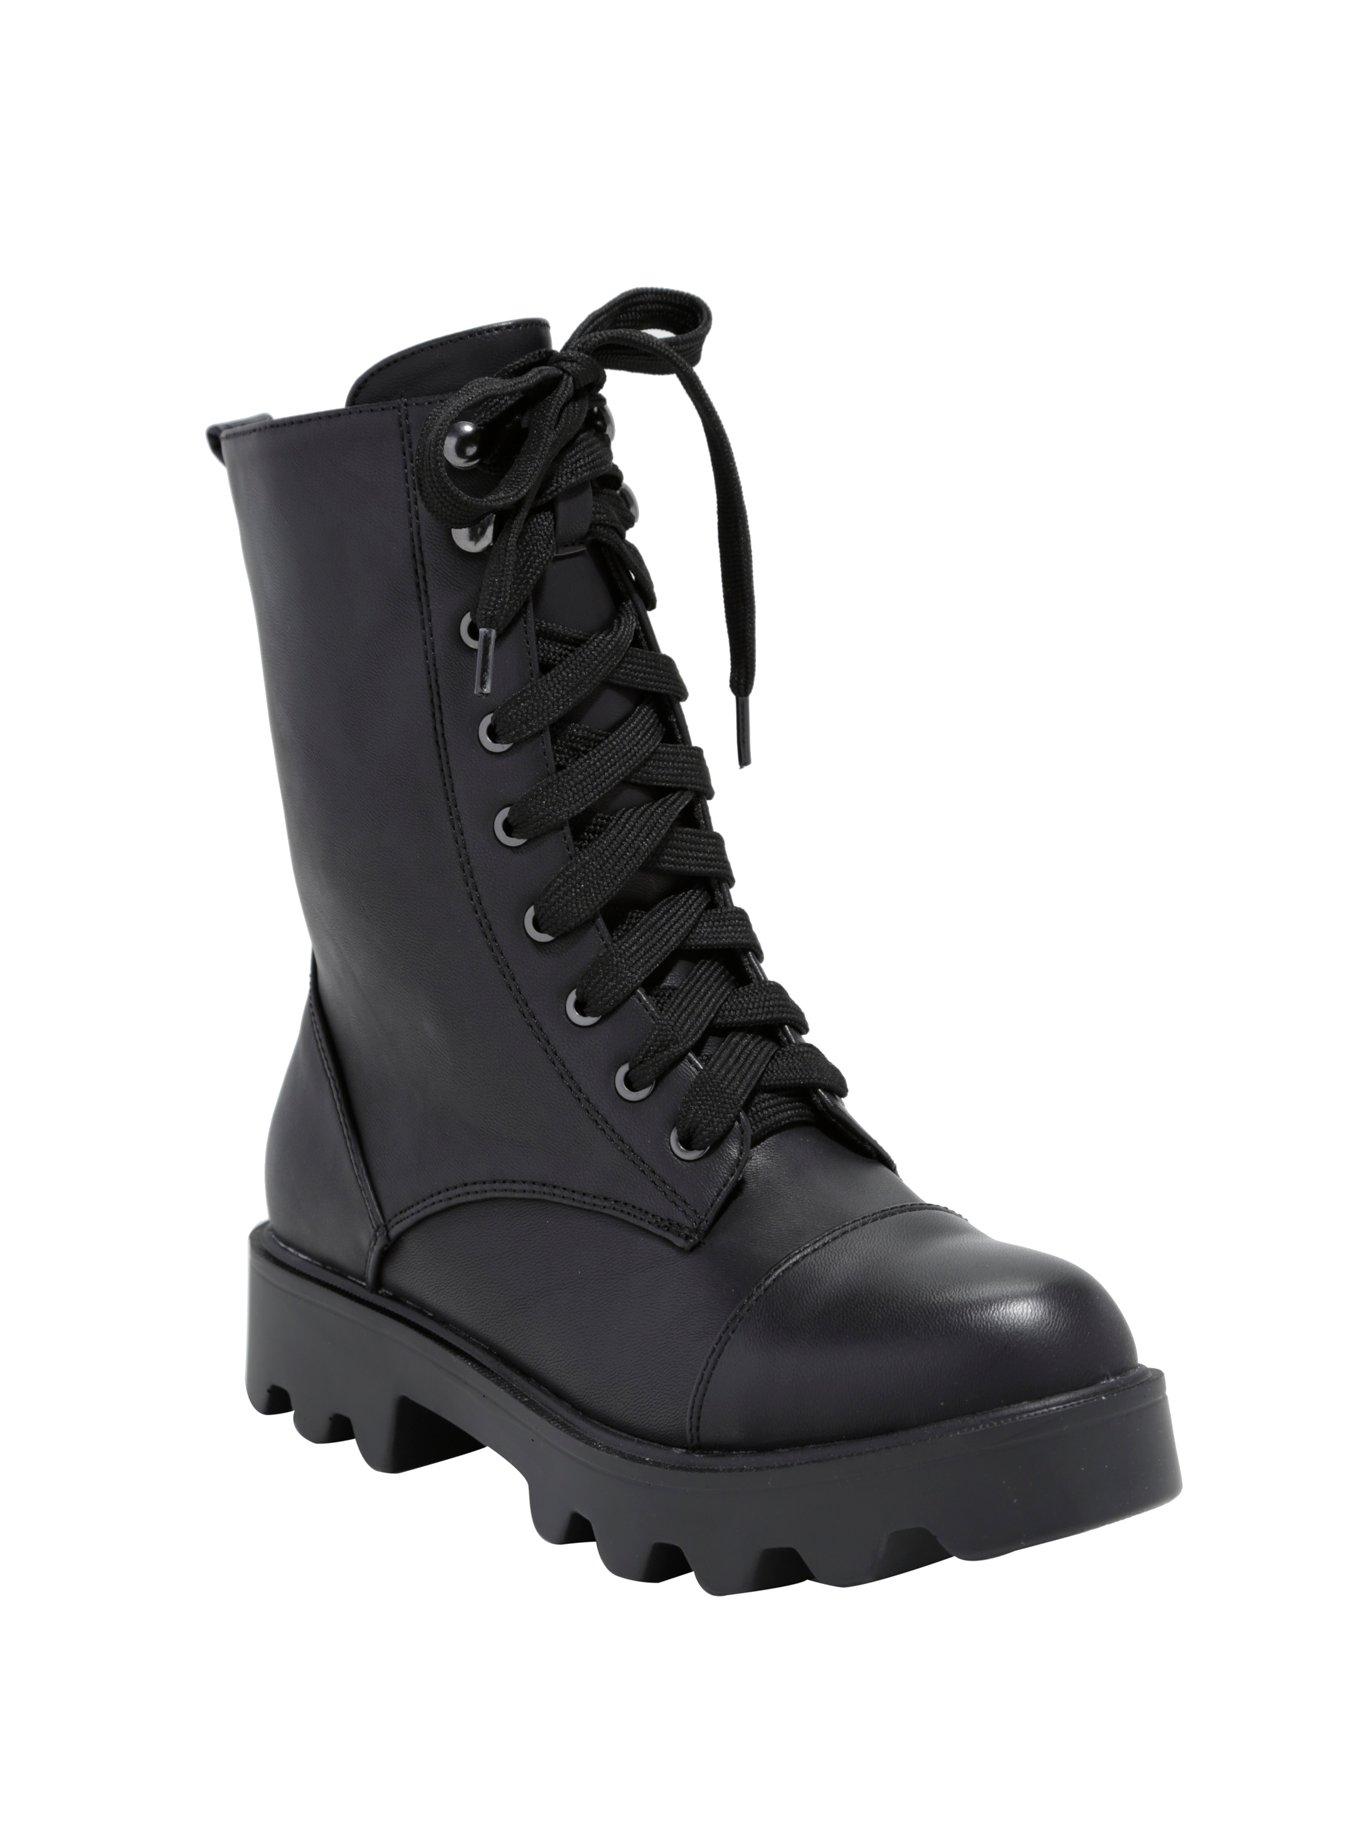 Black Lace-Up Thick Sole Combat Boots, BLACK, hi-res